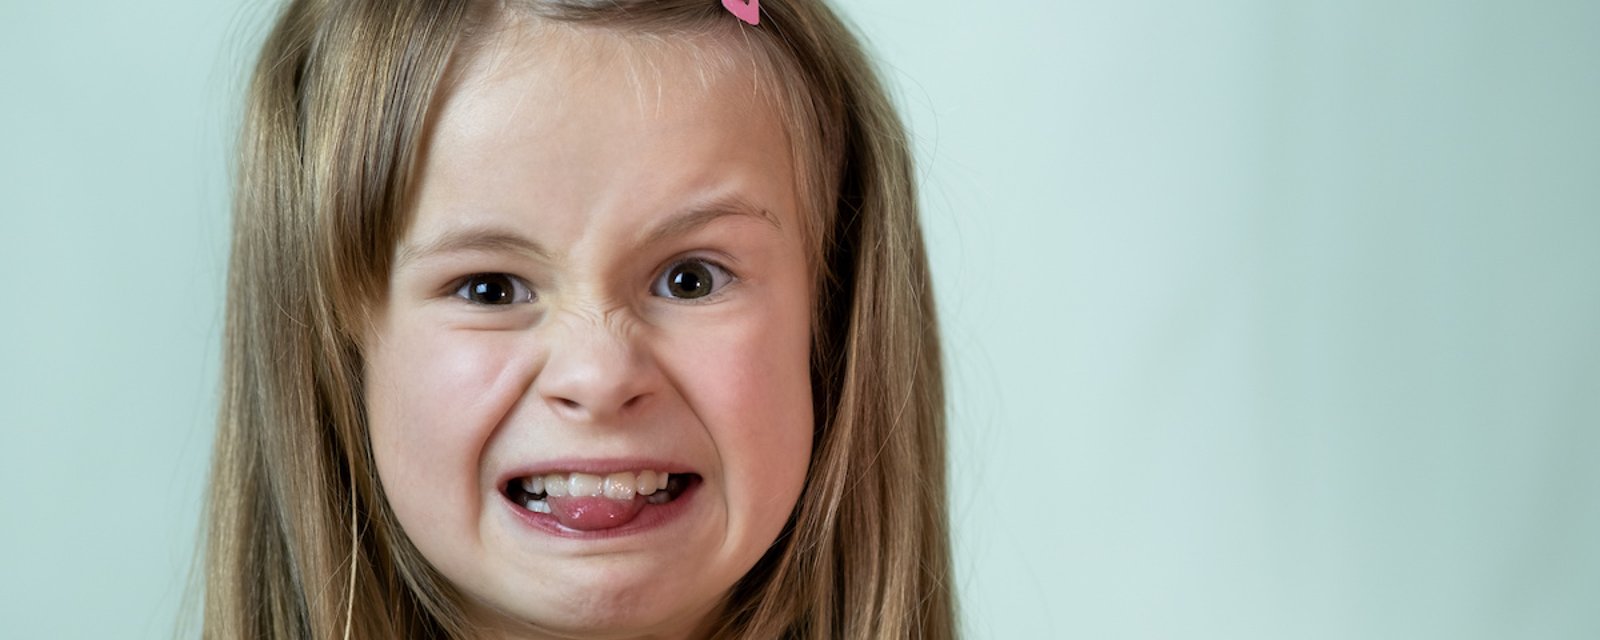 Vos enfants ont ces 8 habitudes qui vous énervent? C'est tout à fait normal!